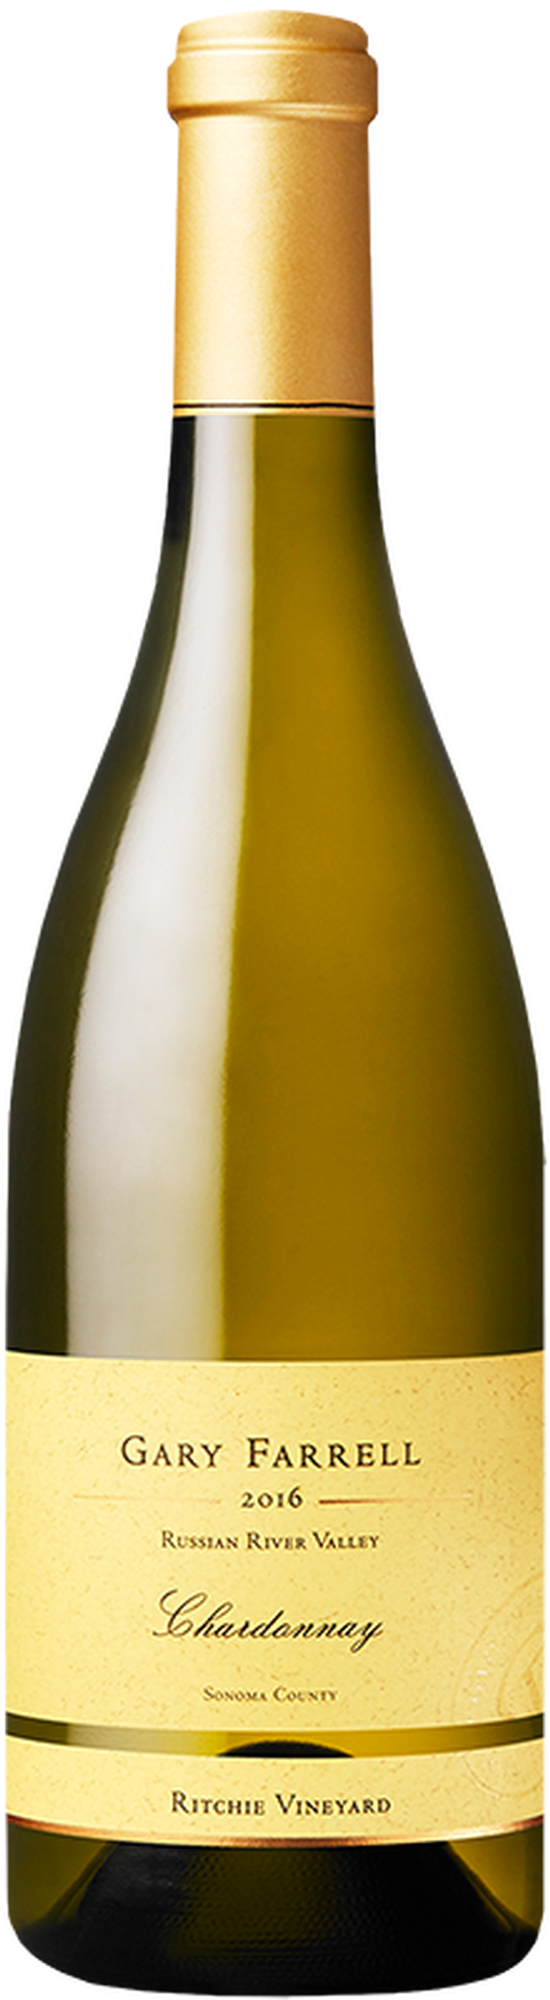 2016 Ritchie Vineyard Chardonnay